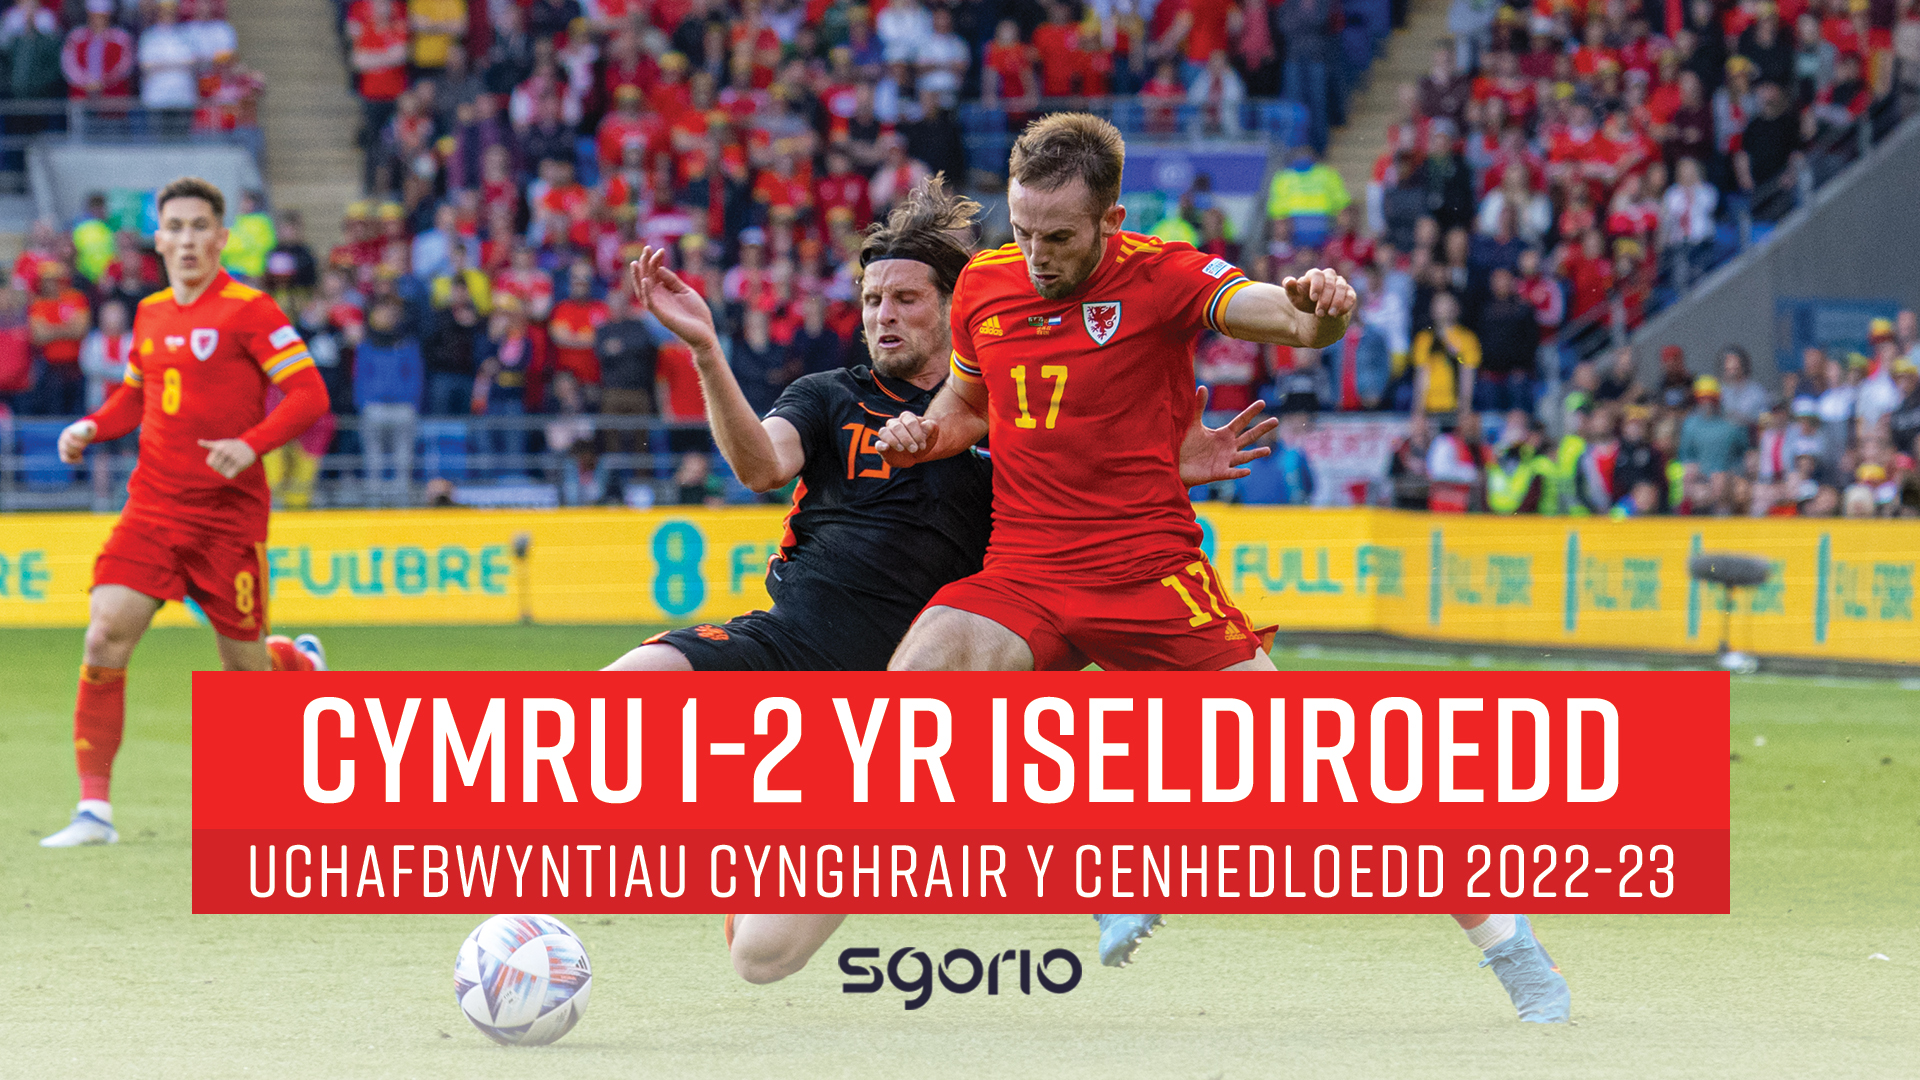 Cymru 1-2 Yr Iseldiroedd | UEFA Nations League